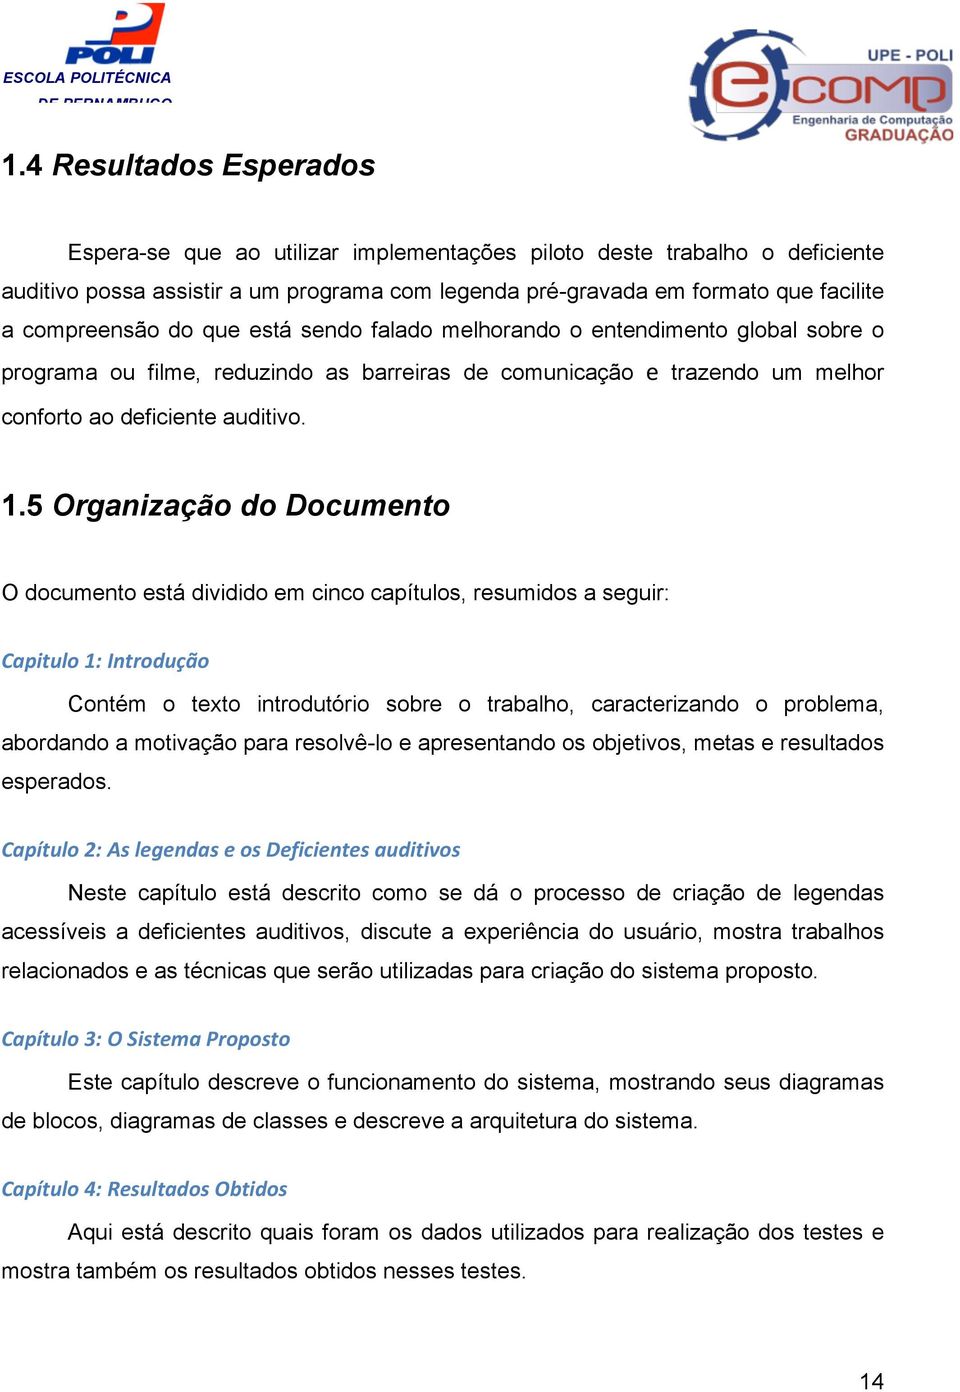 5 Organização do Documento O documento está dividido em cinco capítulos, resumidos a seguir: Capitulo 1: Introdução Contém o texto introdutório sobre o trabalho, caracterizando o problema, abordando